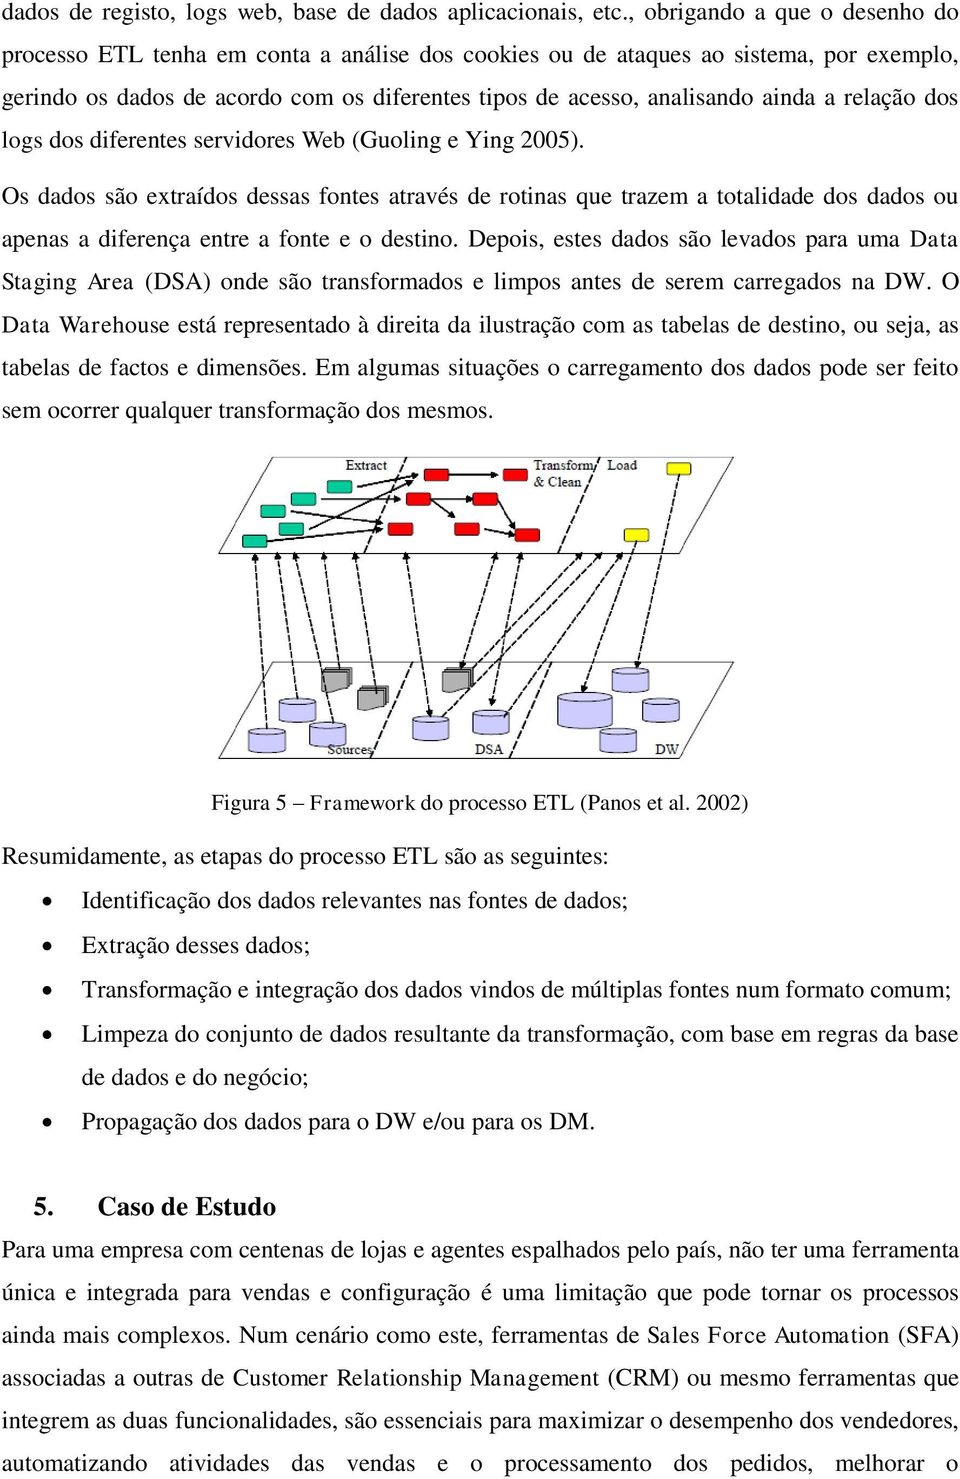 a relação dos logs dos diferentes servidores Web (Guoling e Ying 2005).